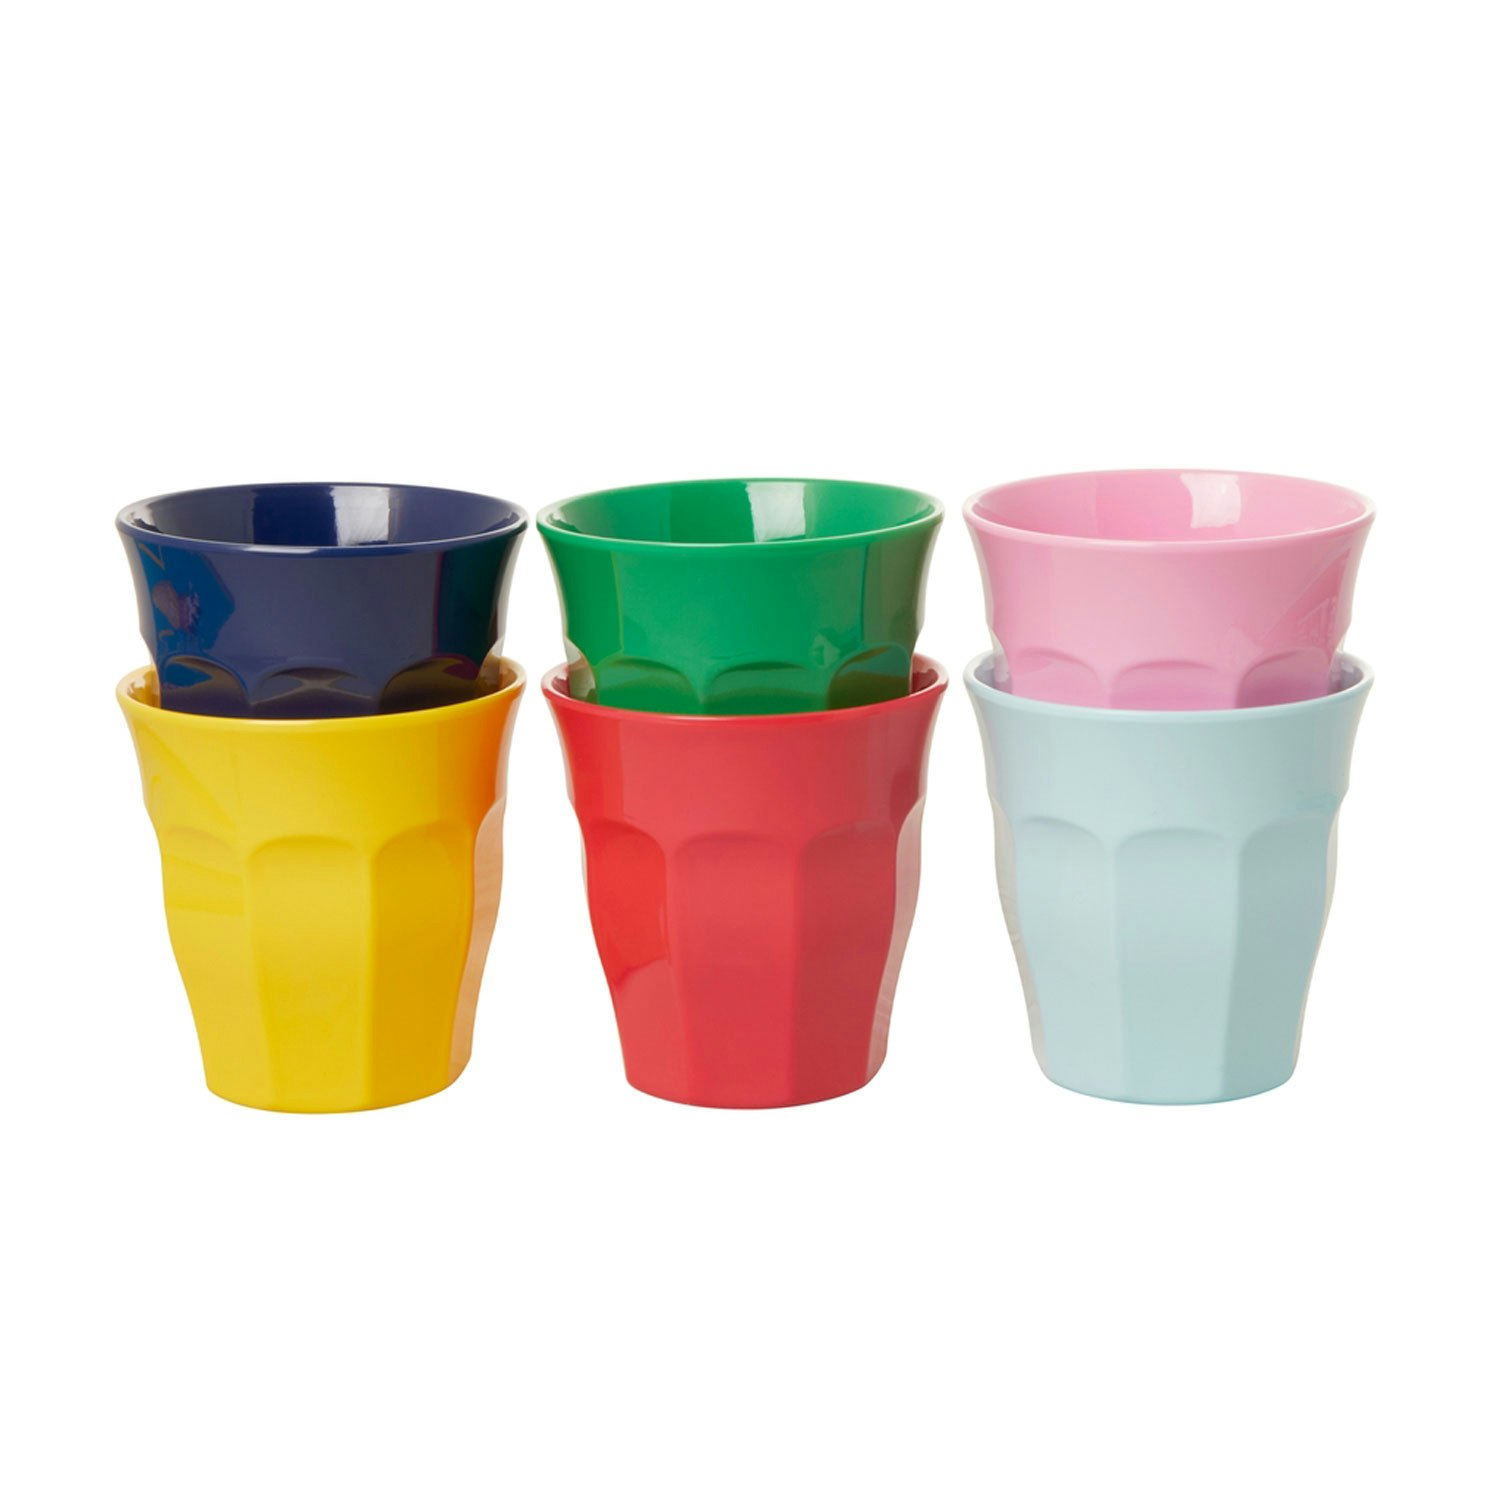 https://royaldesign.com/image/2/rice-melamine-cups-20-cl-6-pack-0